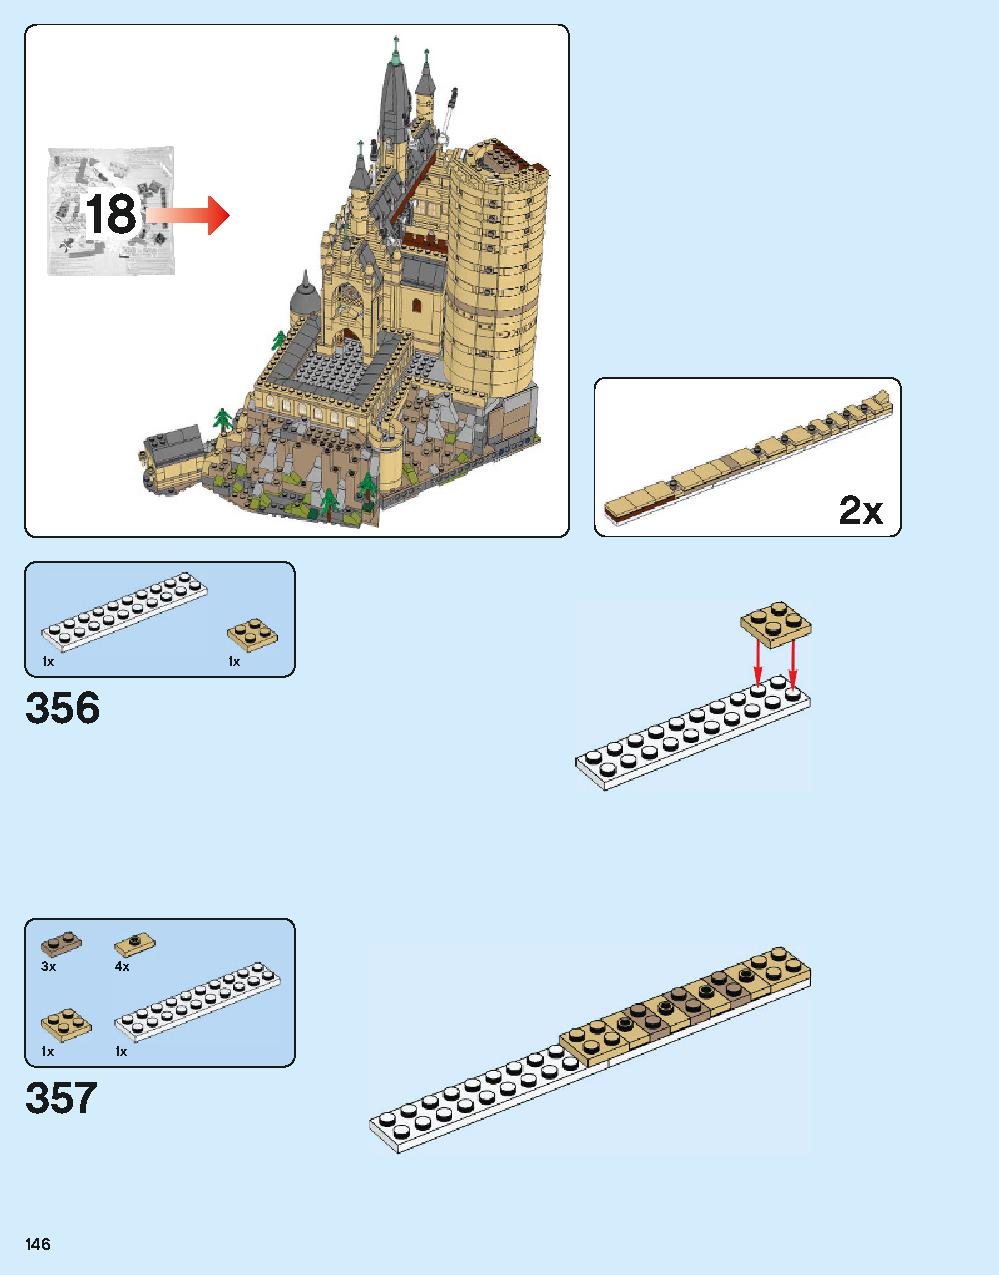 ホグワーツ城 71043 レゴの商品情報 レゴの説明書・組立方法 146 page